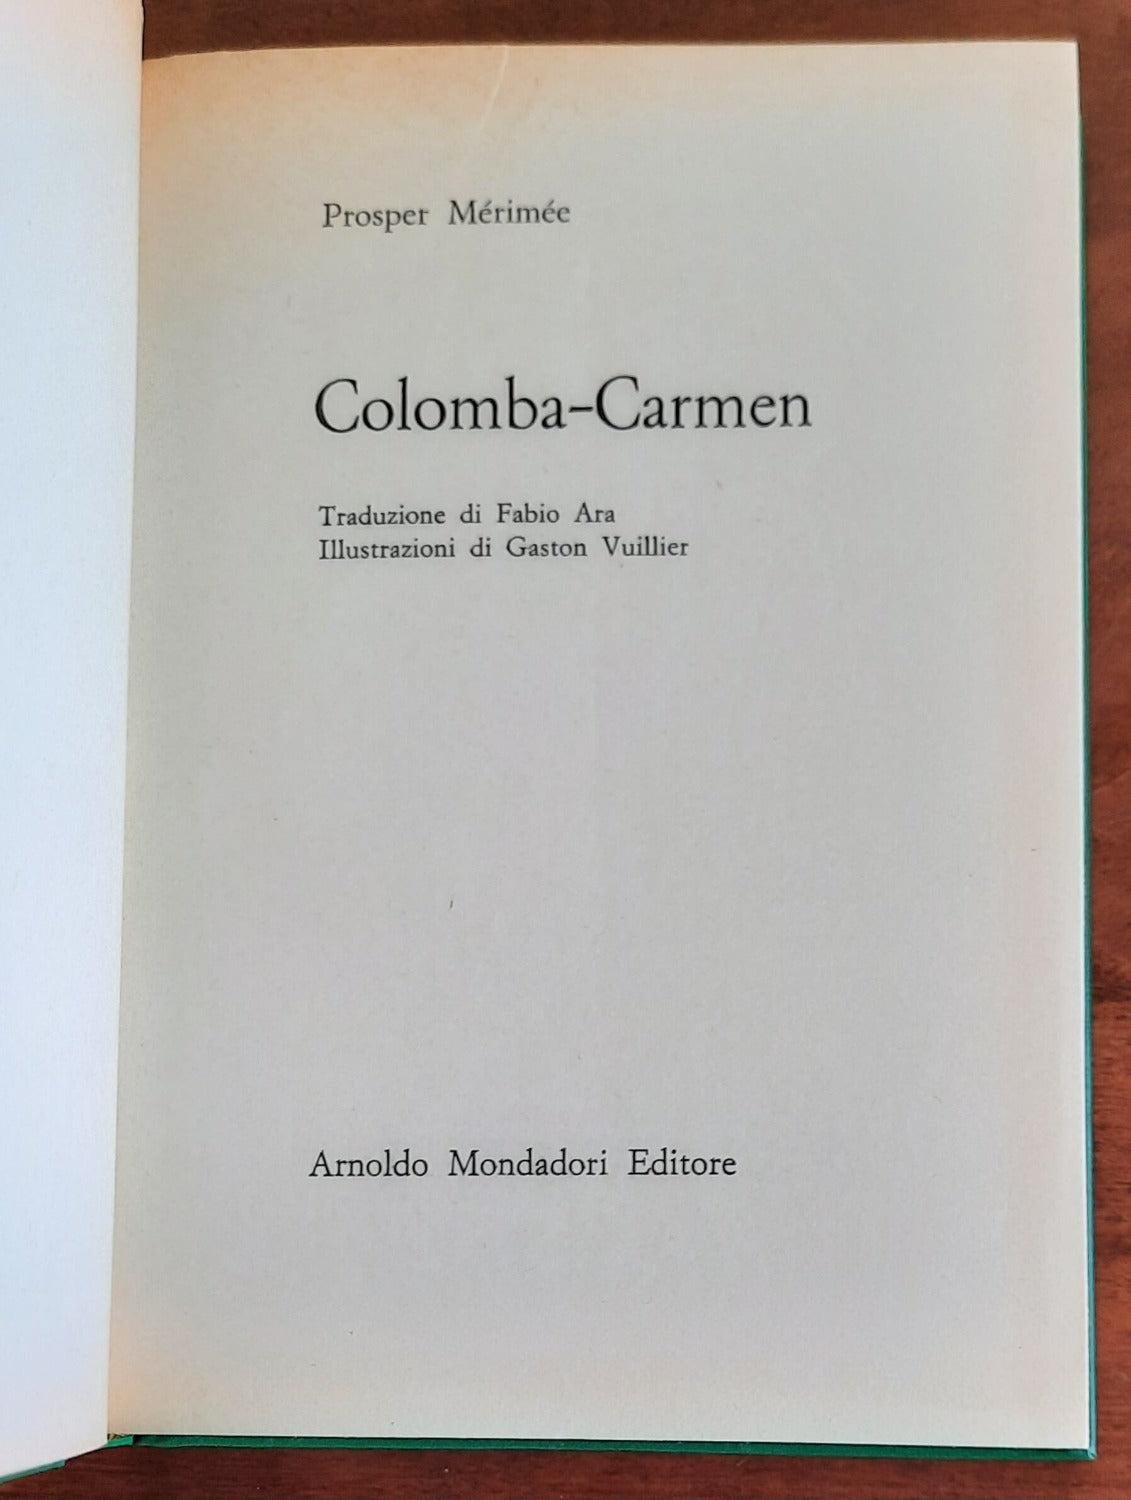 Colomba - Carmen - di Prosper Mérimée